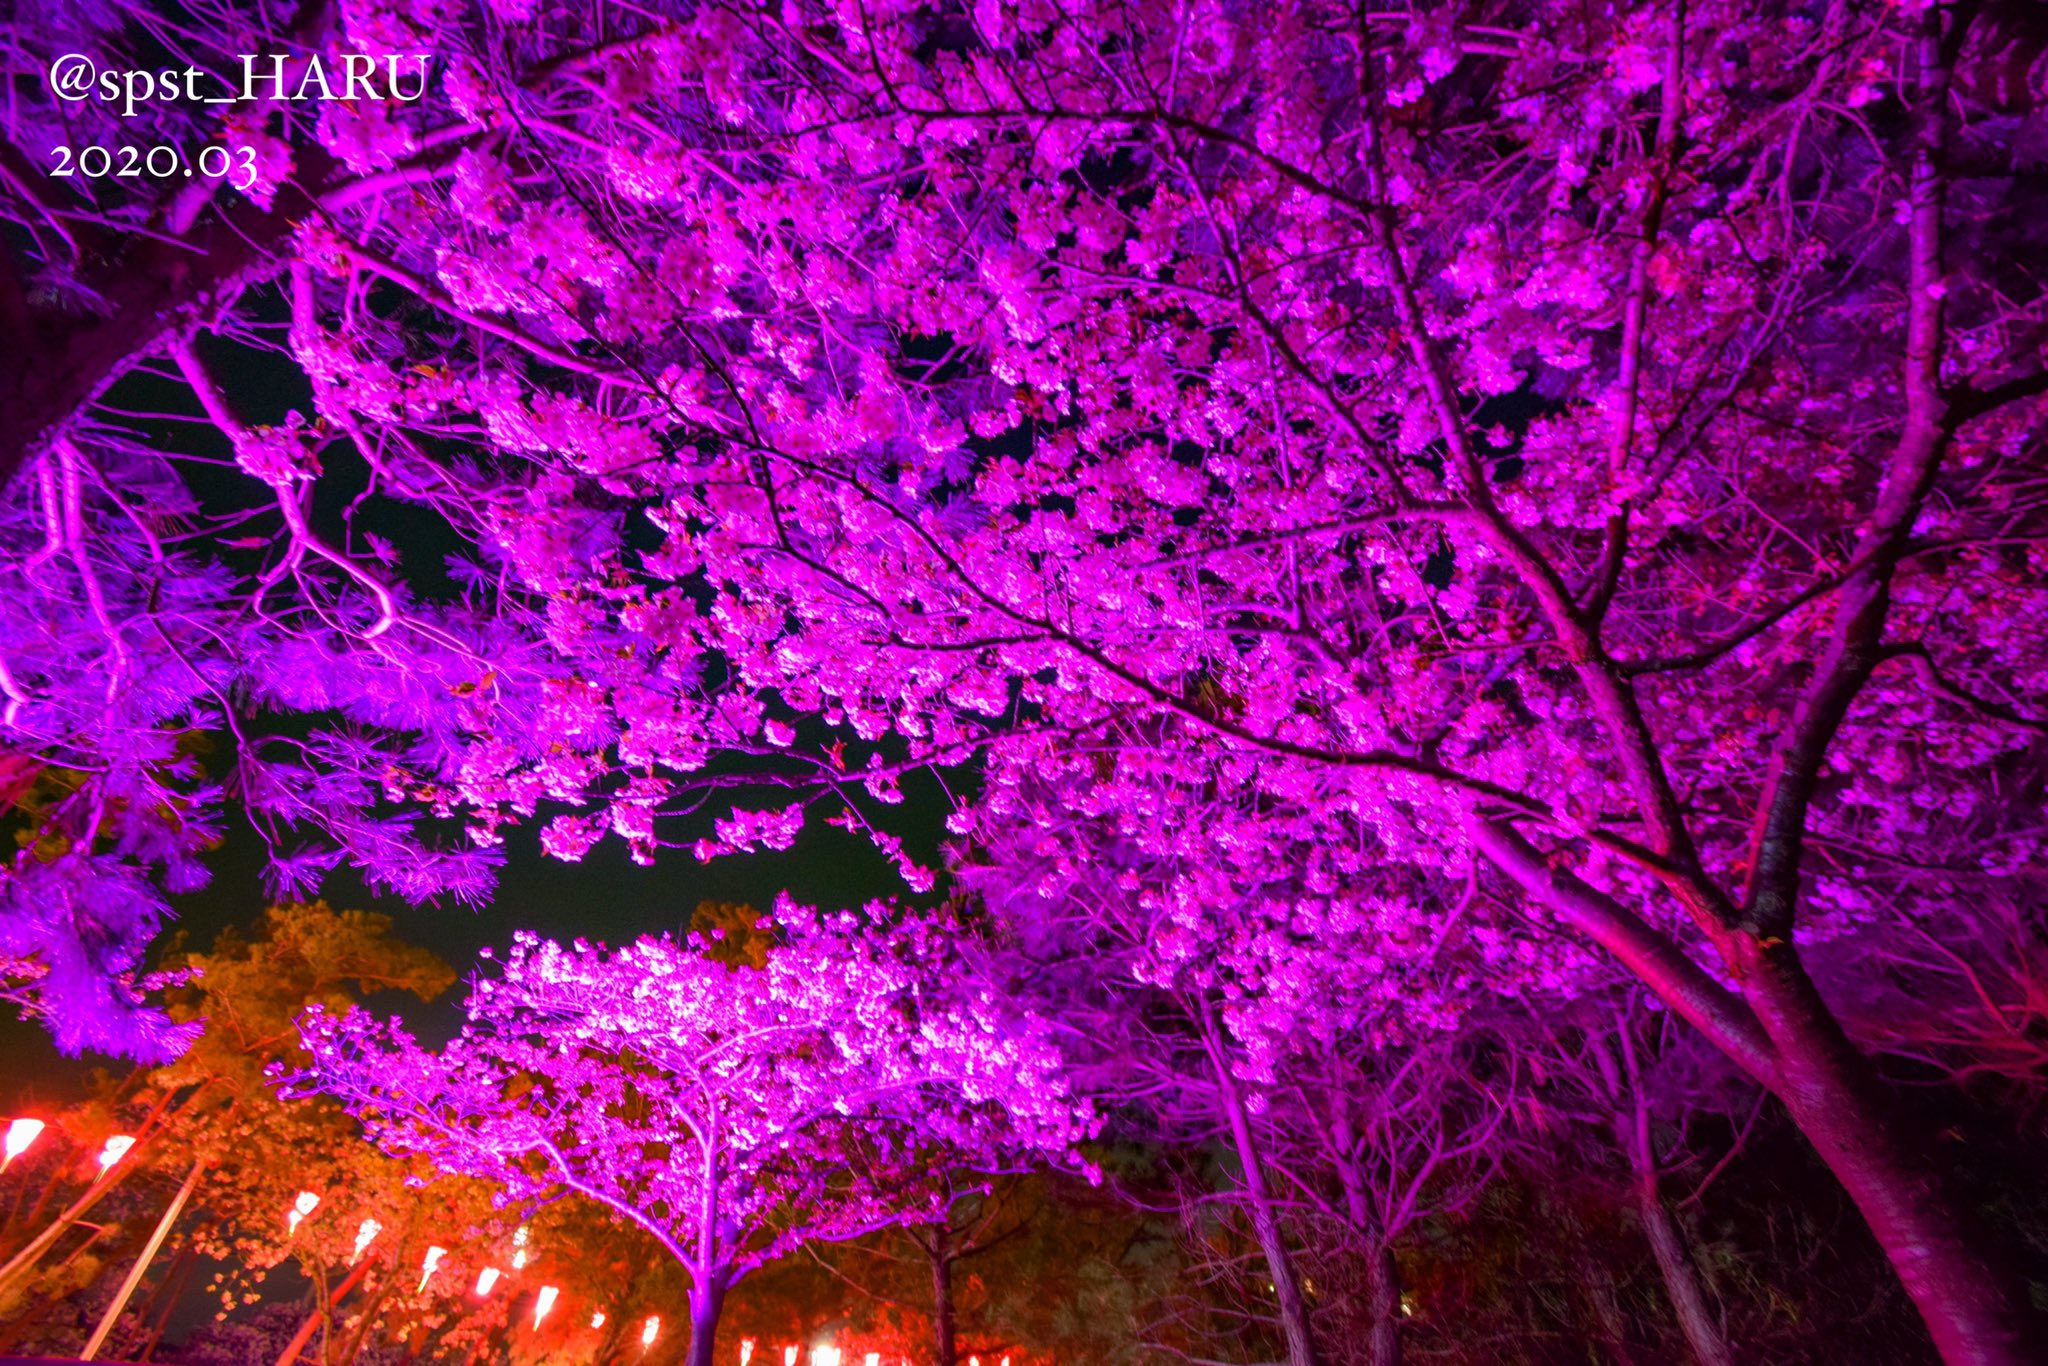 しらこ温泉桜祭り Twitter Search Twitter